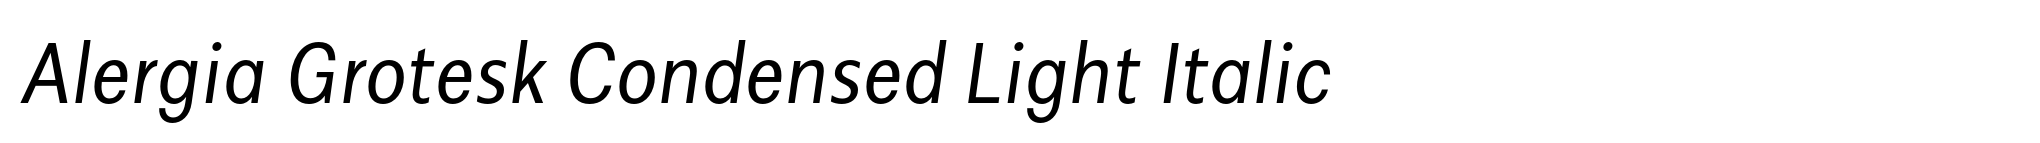 Alergia Grotesk Condensed Light Italic image